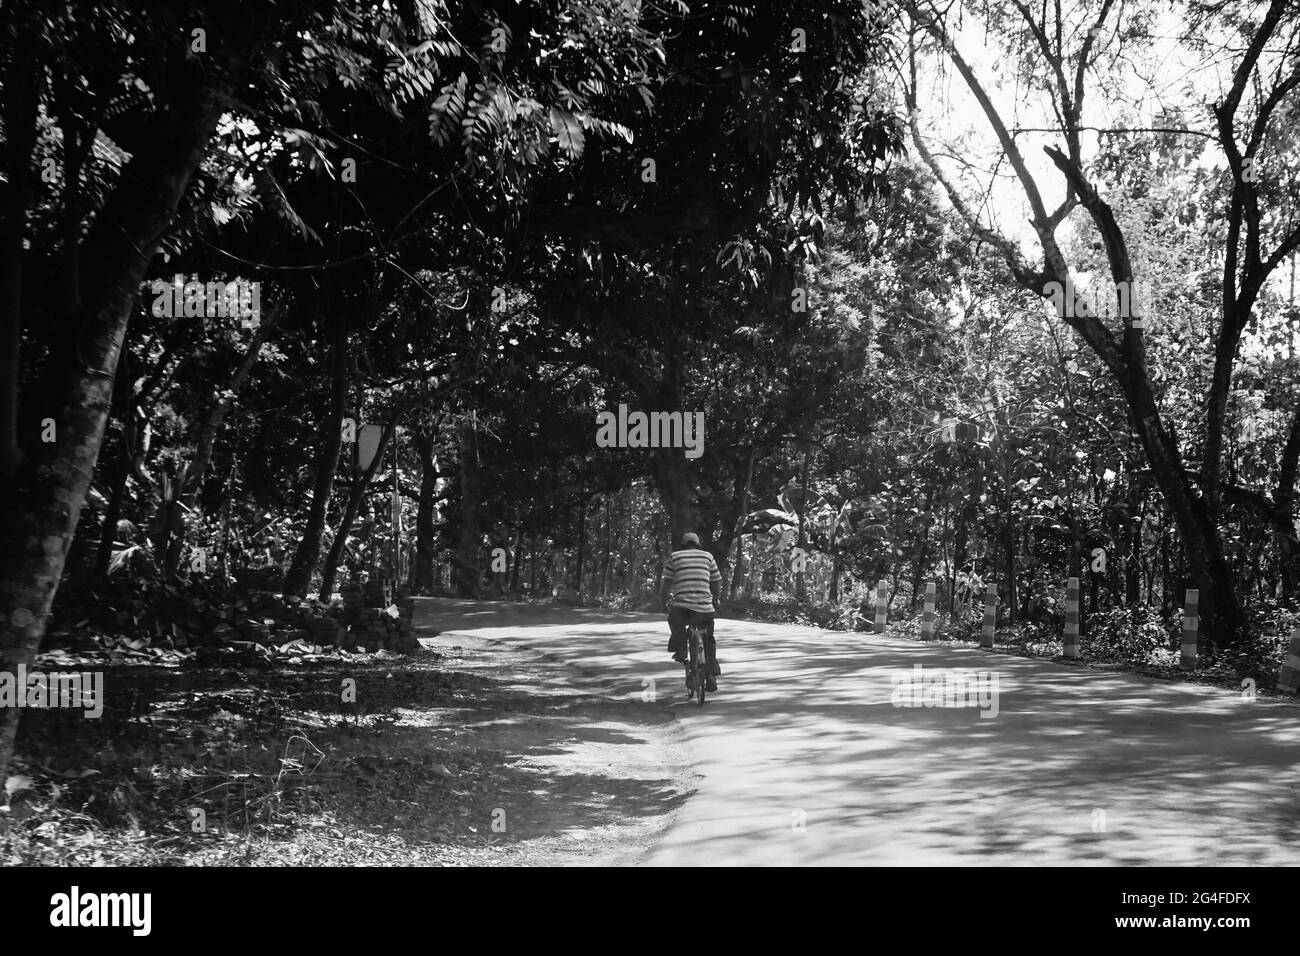 Una strada del villaggio illuminata dal sole con alberi su entrambi i lati e una persona che passa attraverso su una bicicletta. Foto Stock